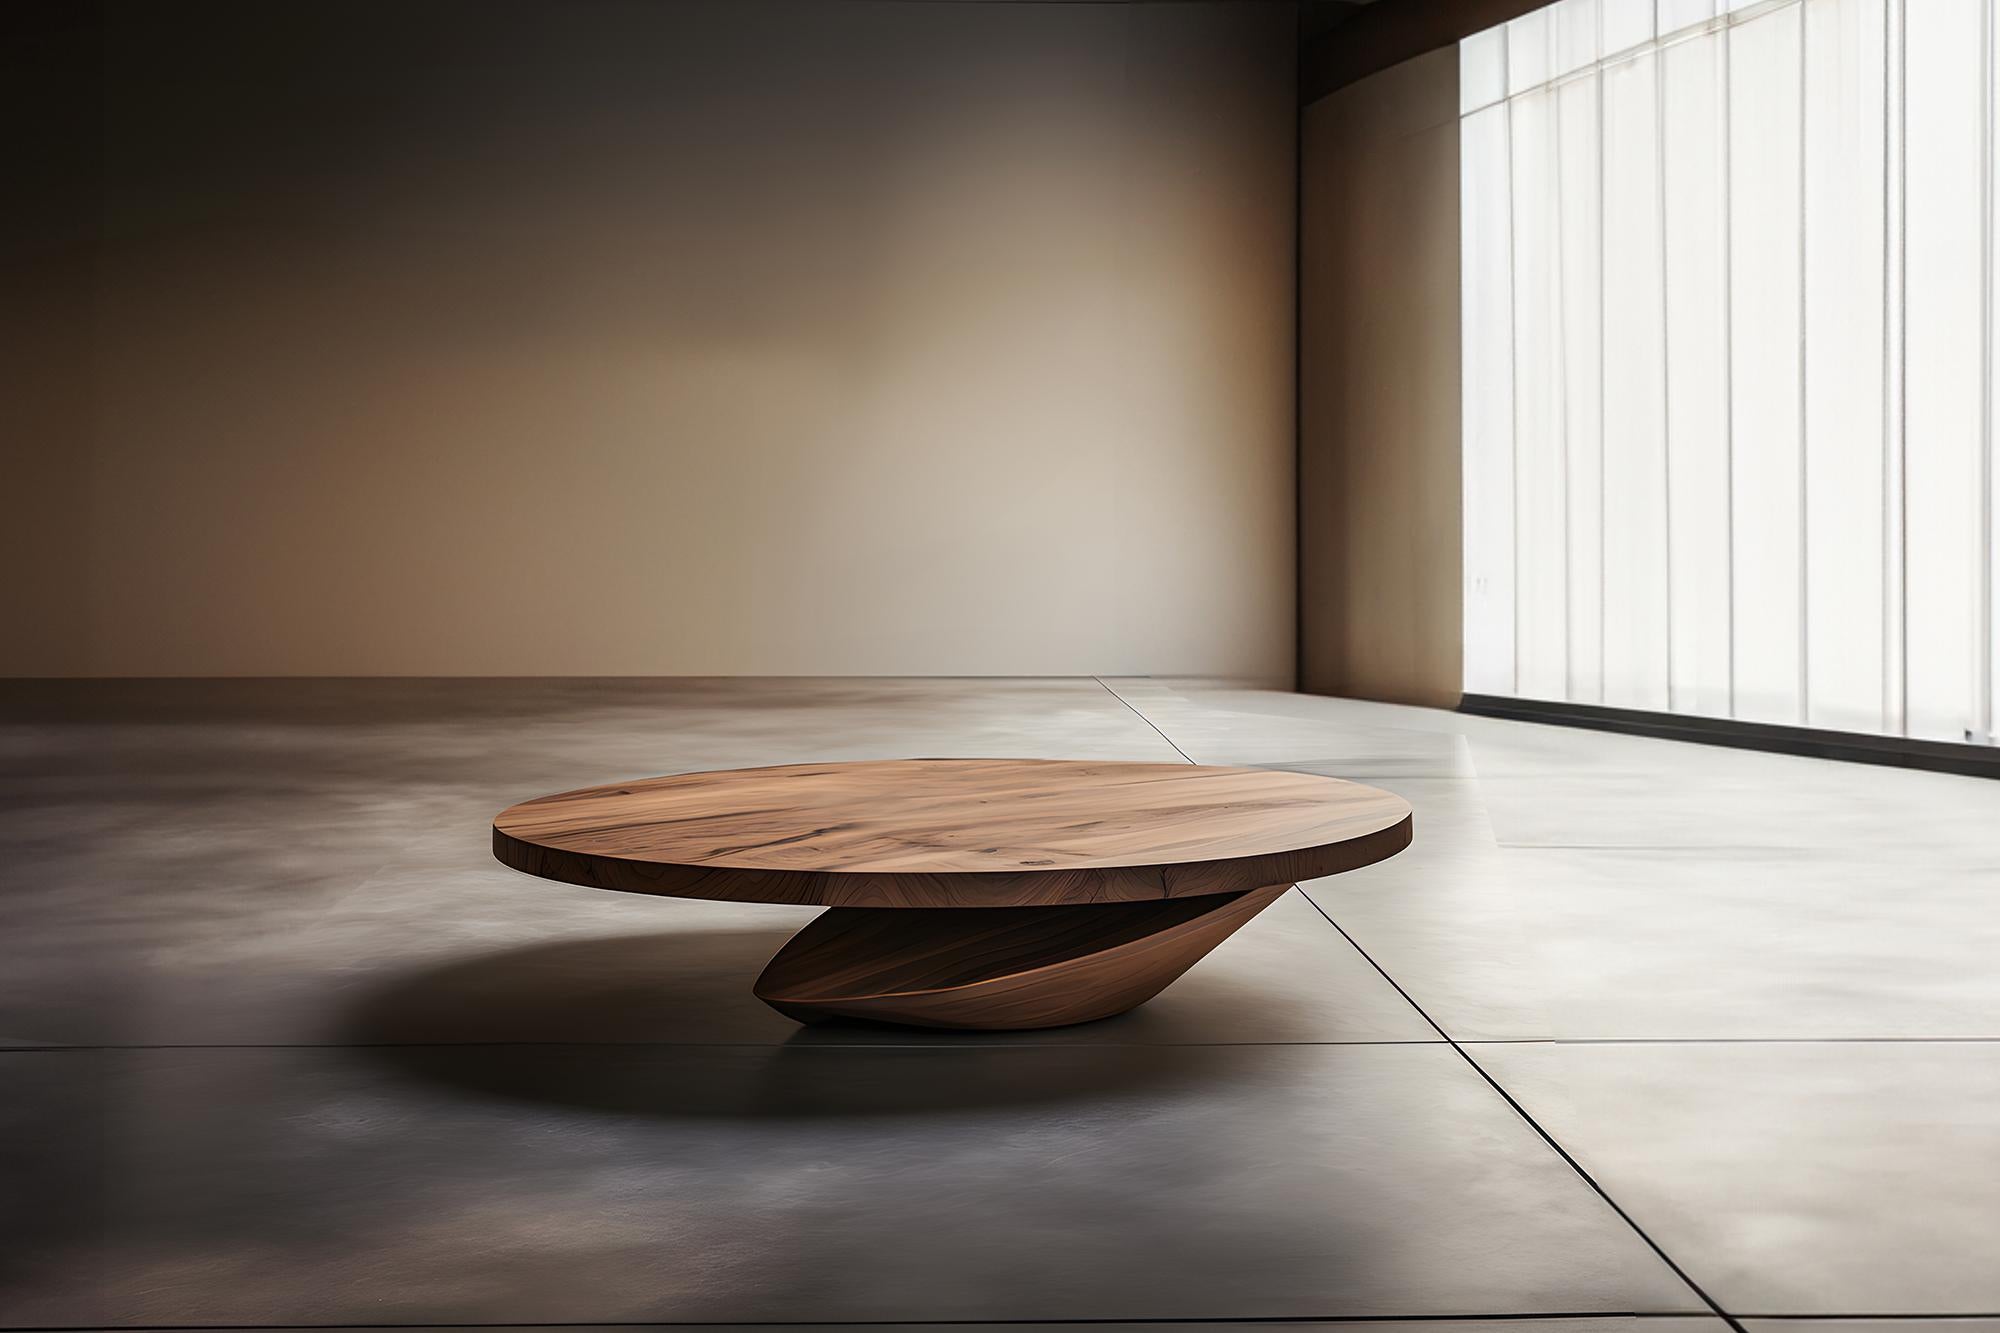 Skulpturaler Couchtisch aus Massivholz, Center Table Solace S44 von Joel Escalona


Die Tischserie Solace, entworfen von Joel Escalona, ist eine Möbelkollektion, die dank ihrer sinnlichen, dichten und unregelmäßigen Formen Ausgewogenheit und Präsenz